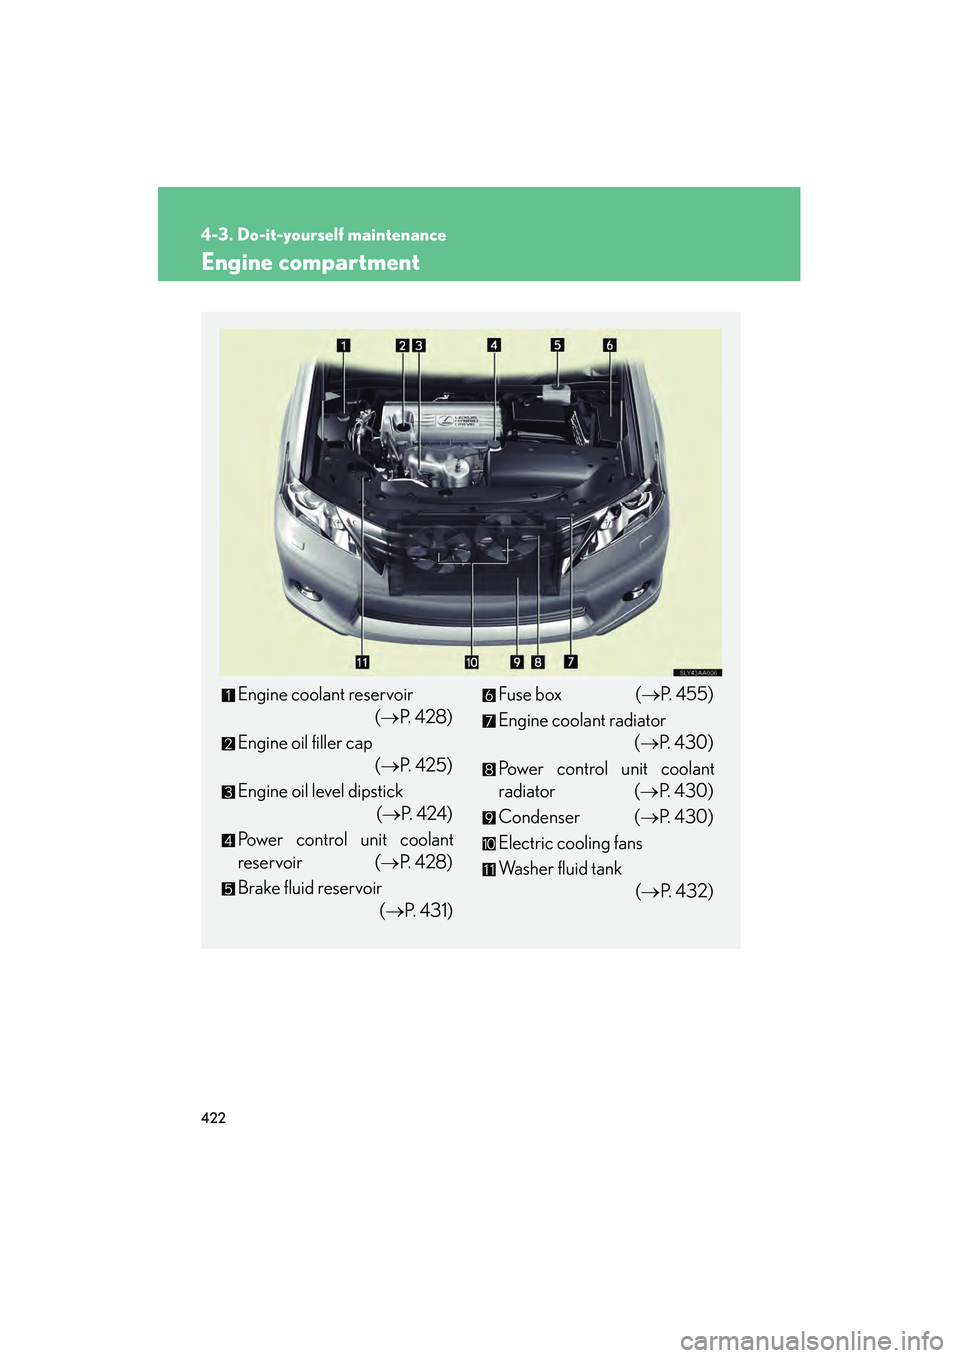 Lexus HS250h 2010  Owners Manual 422
4-3. Do-it-yourself maintenance
HS250h_U_75033U(Canada)
Engine compartment
Engine coolant reservoir (→P.  4 2 8 )
Engine oil filler cap (→P. 425)
Engine oil level dipstick  (→P.  4 2 4 )
Pow